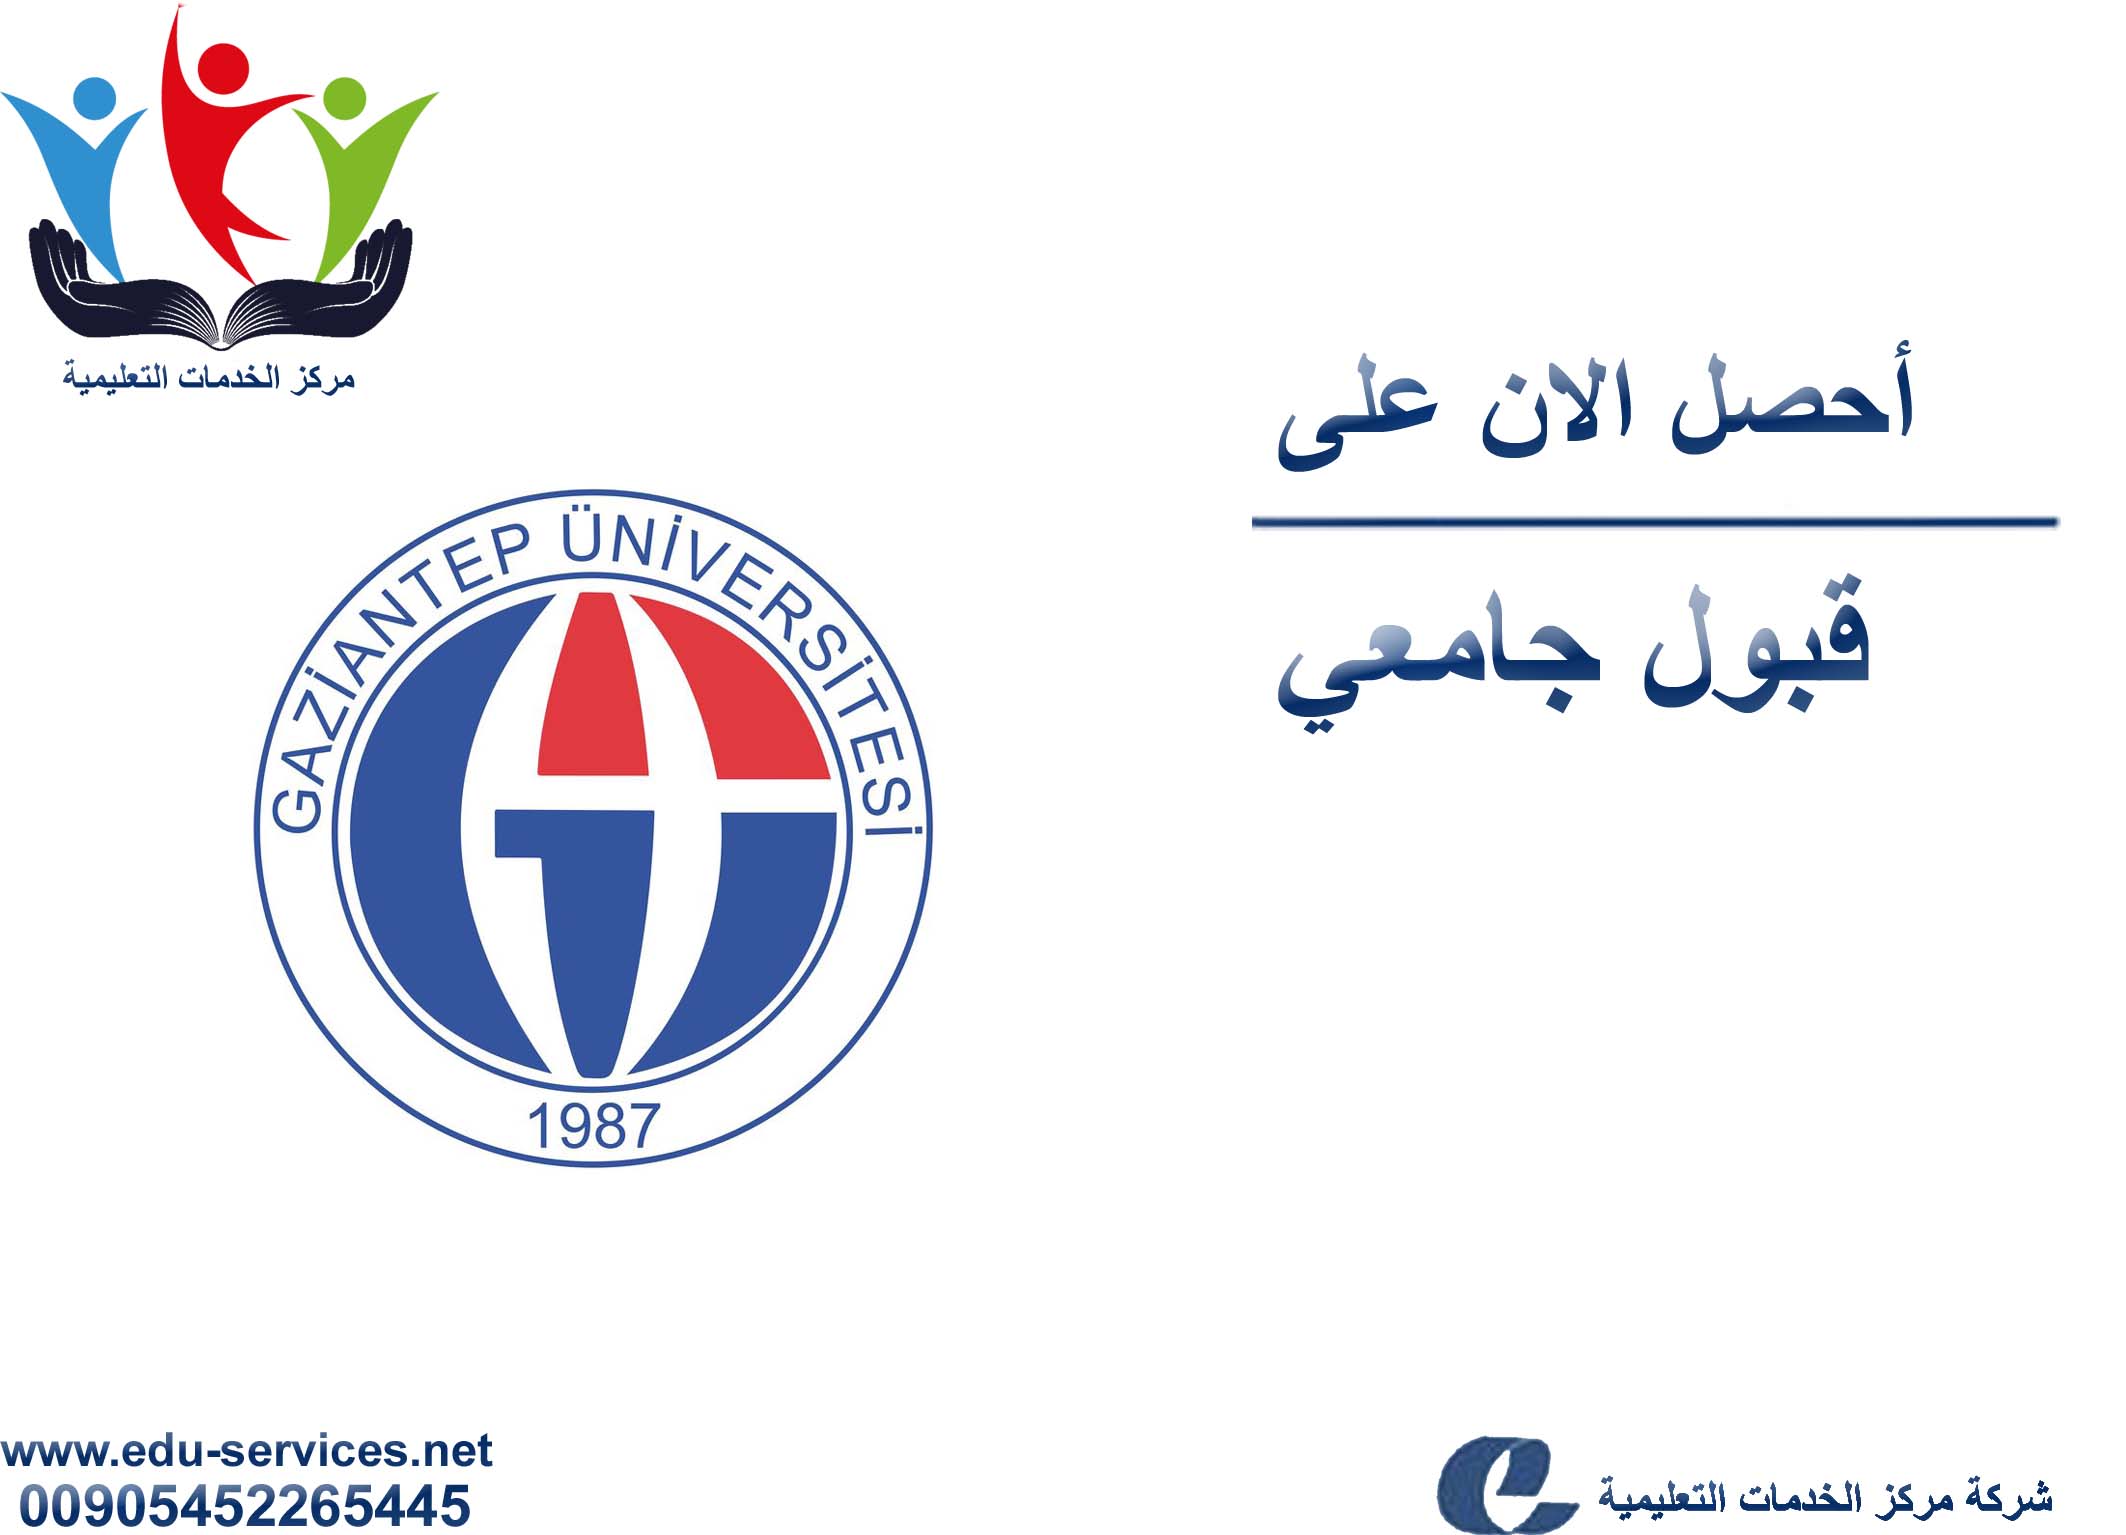 افتتاح التسجيل في جامعة غازي عنتاب للعام 2018-2019